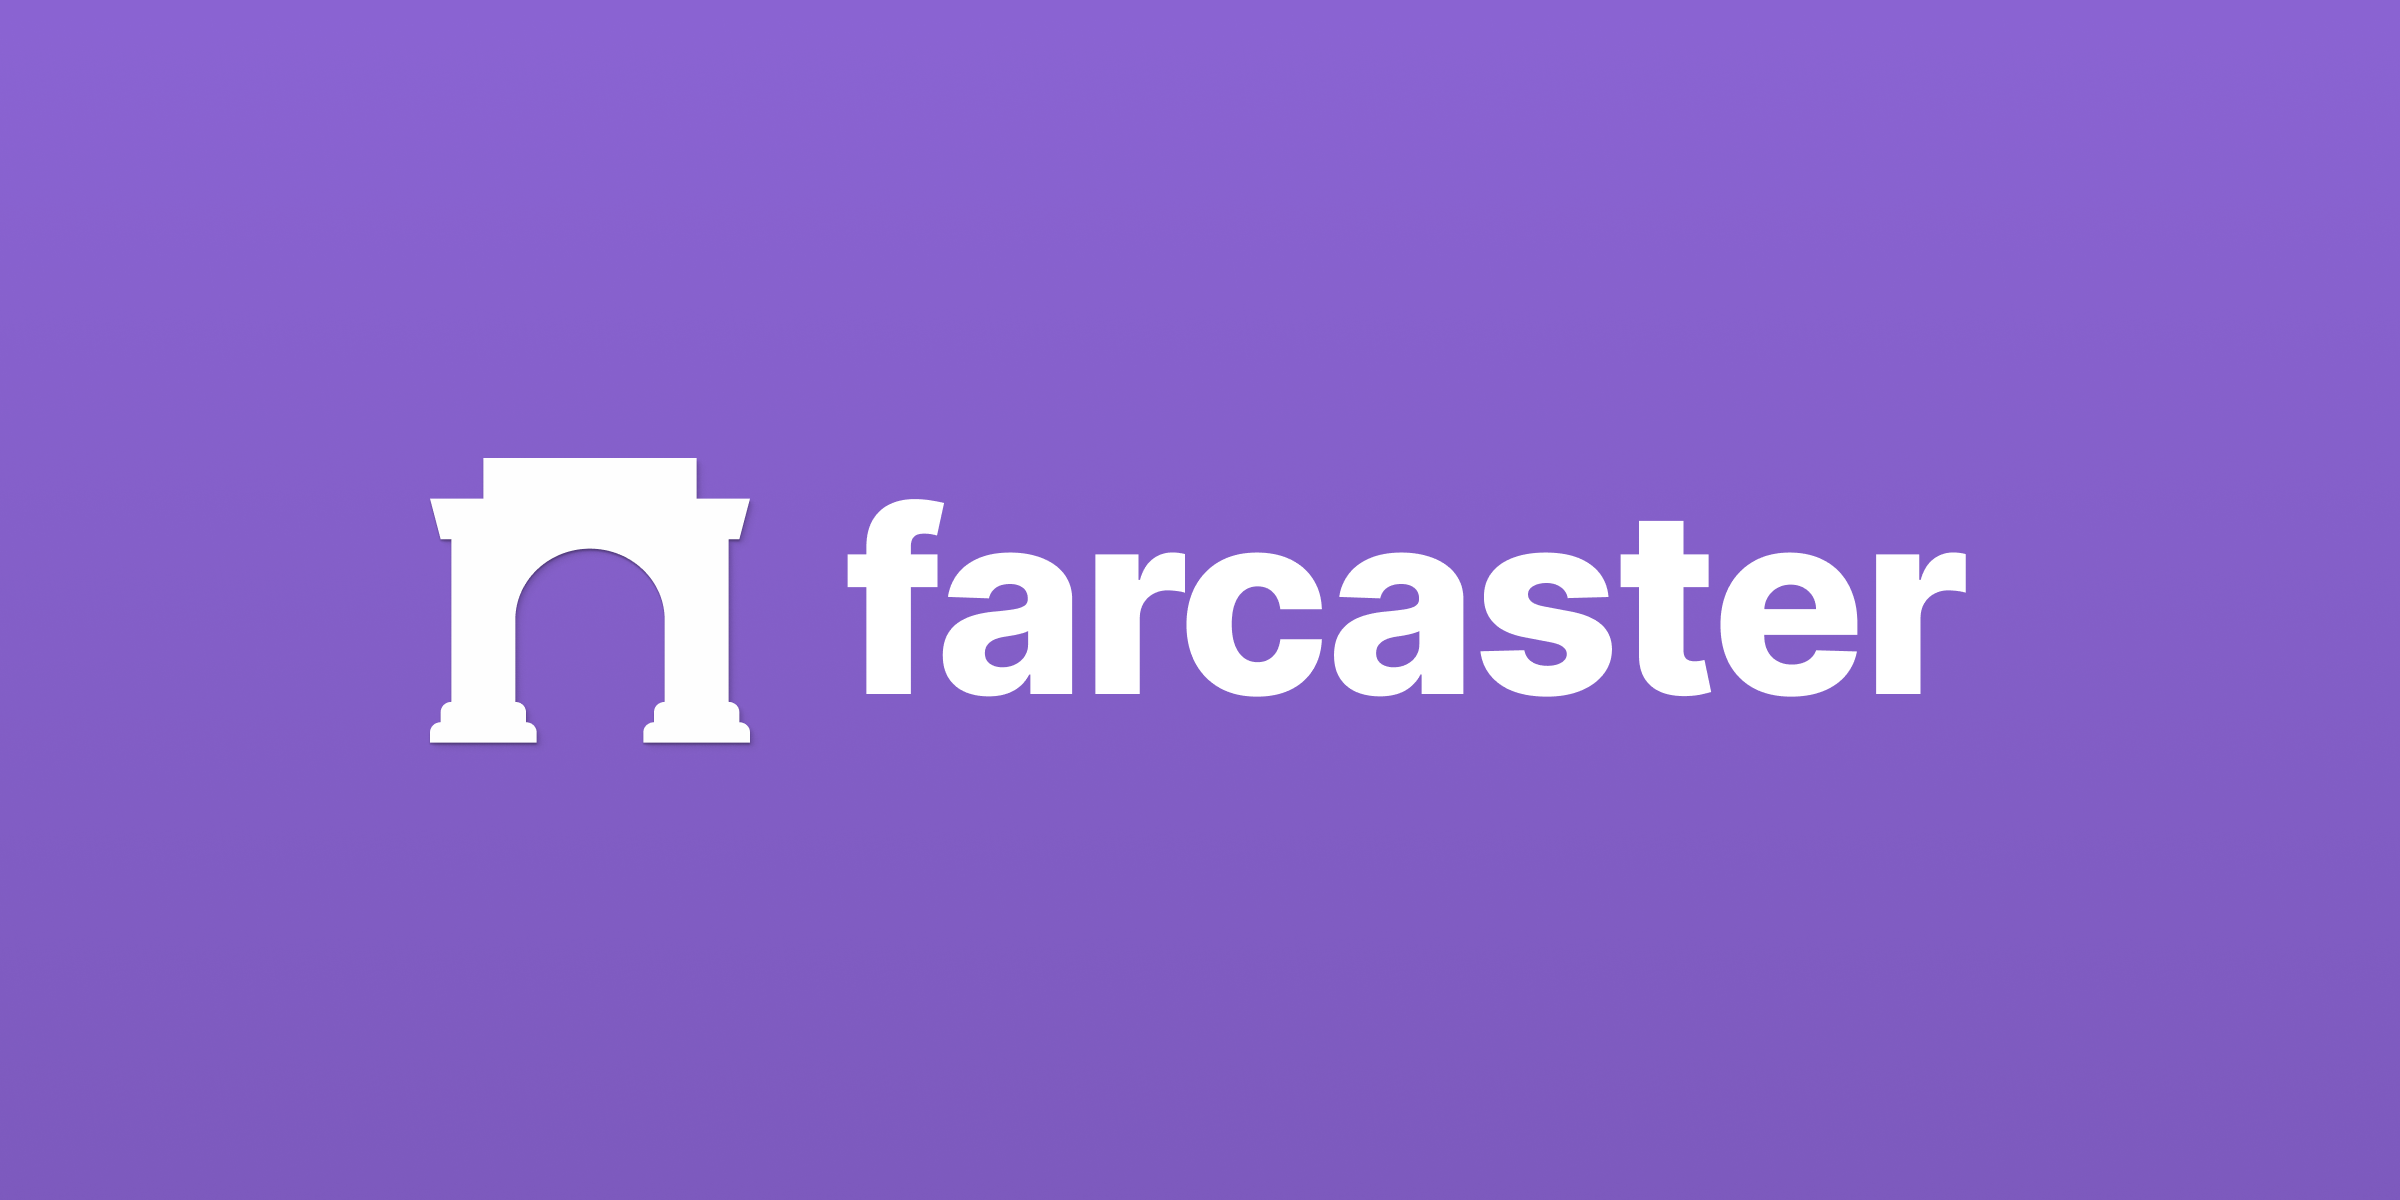 Farcaster là gì